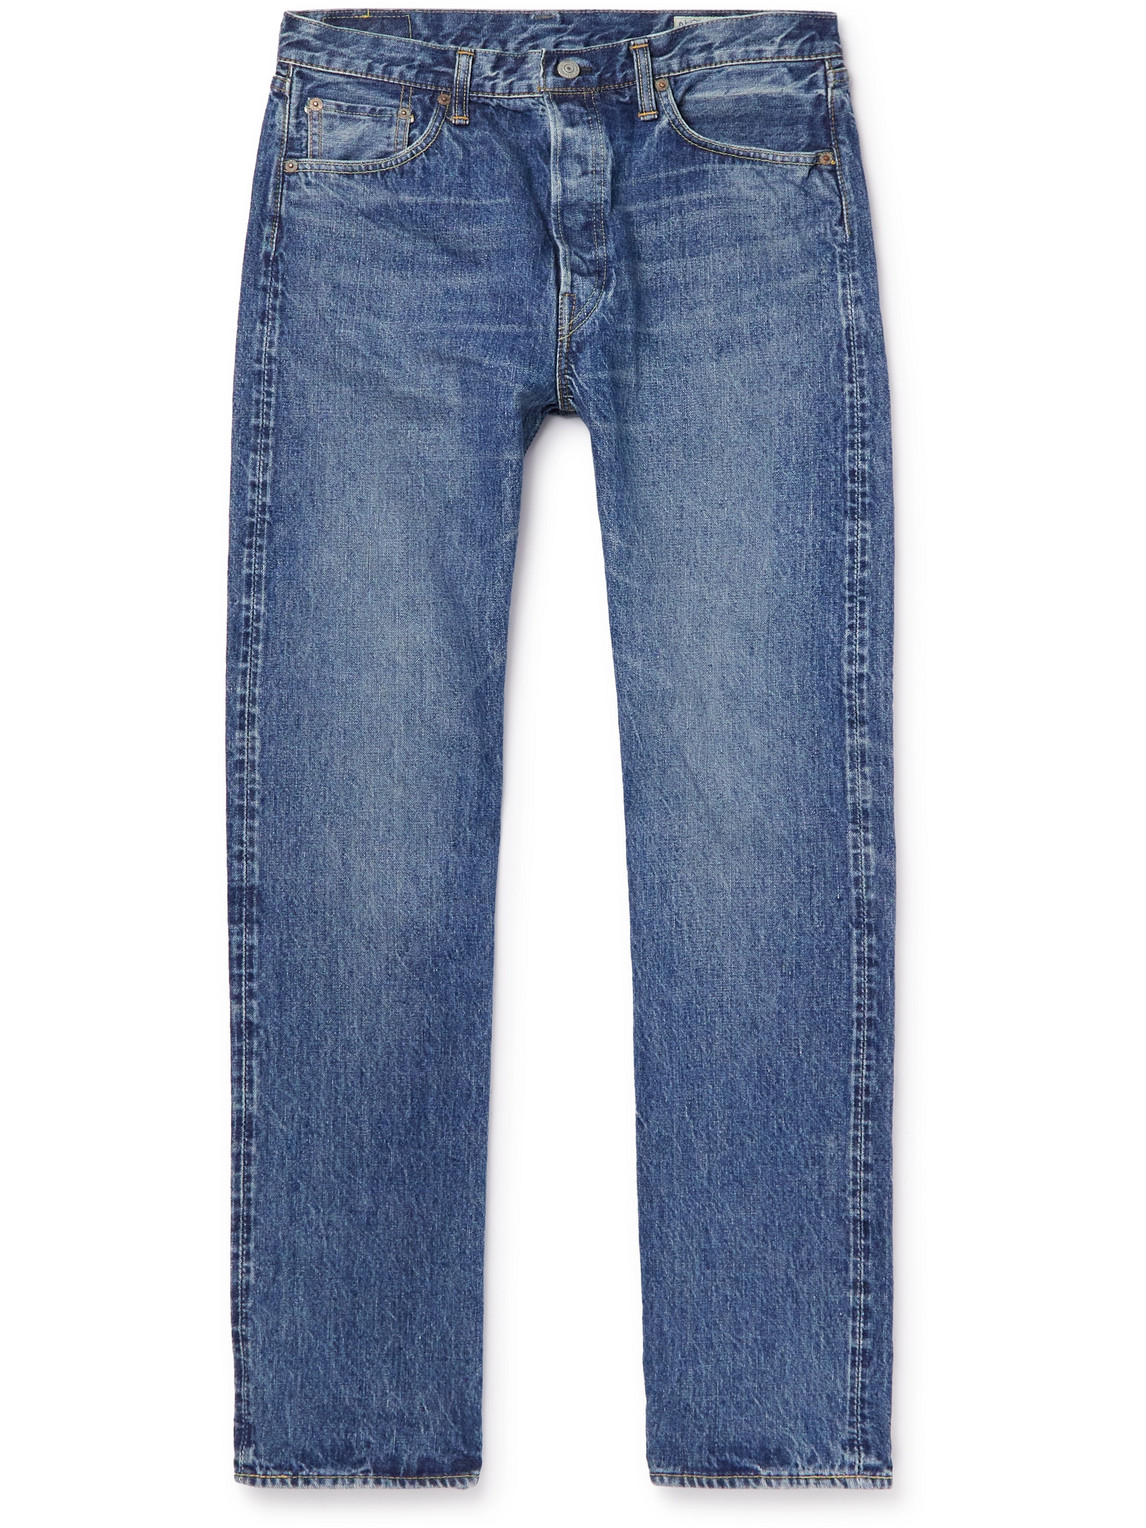 105 Straight-Leg Selvedge Jeans